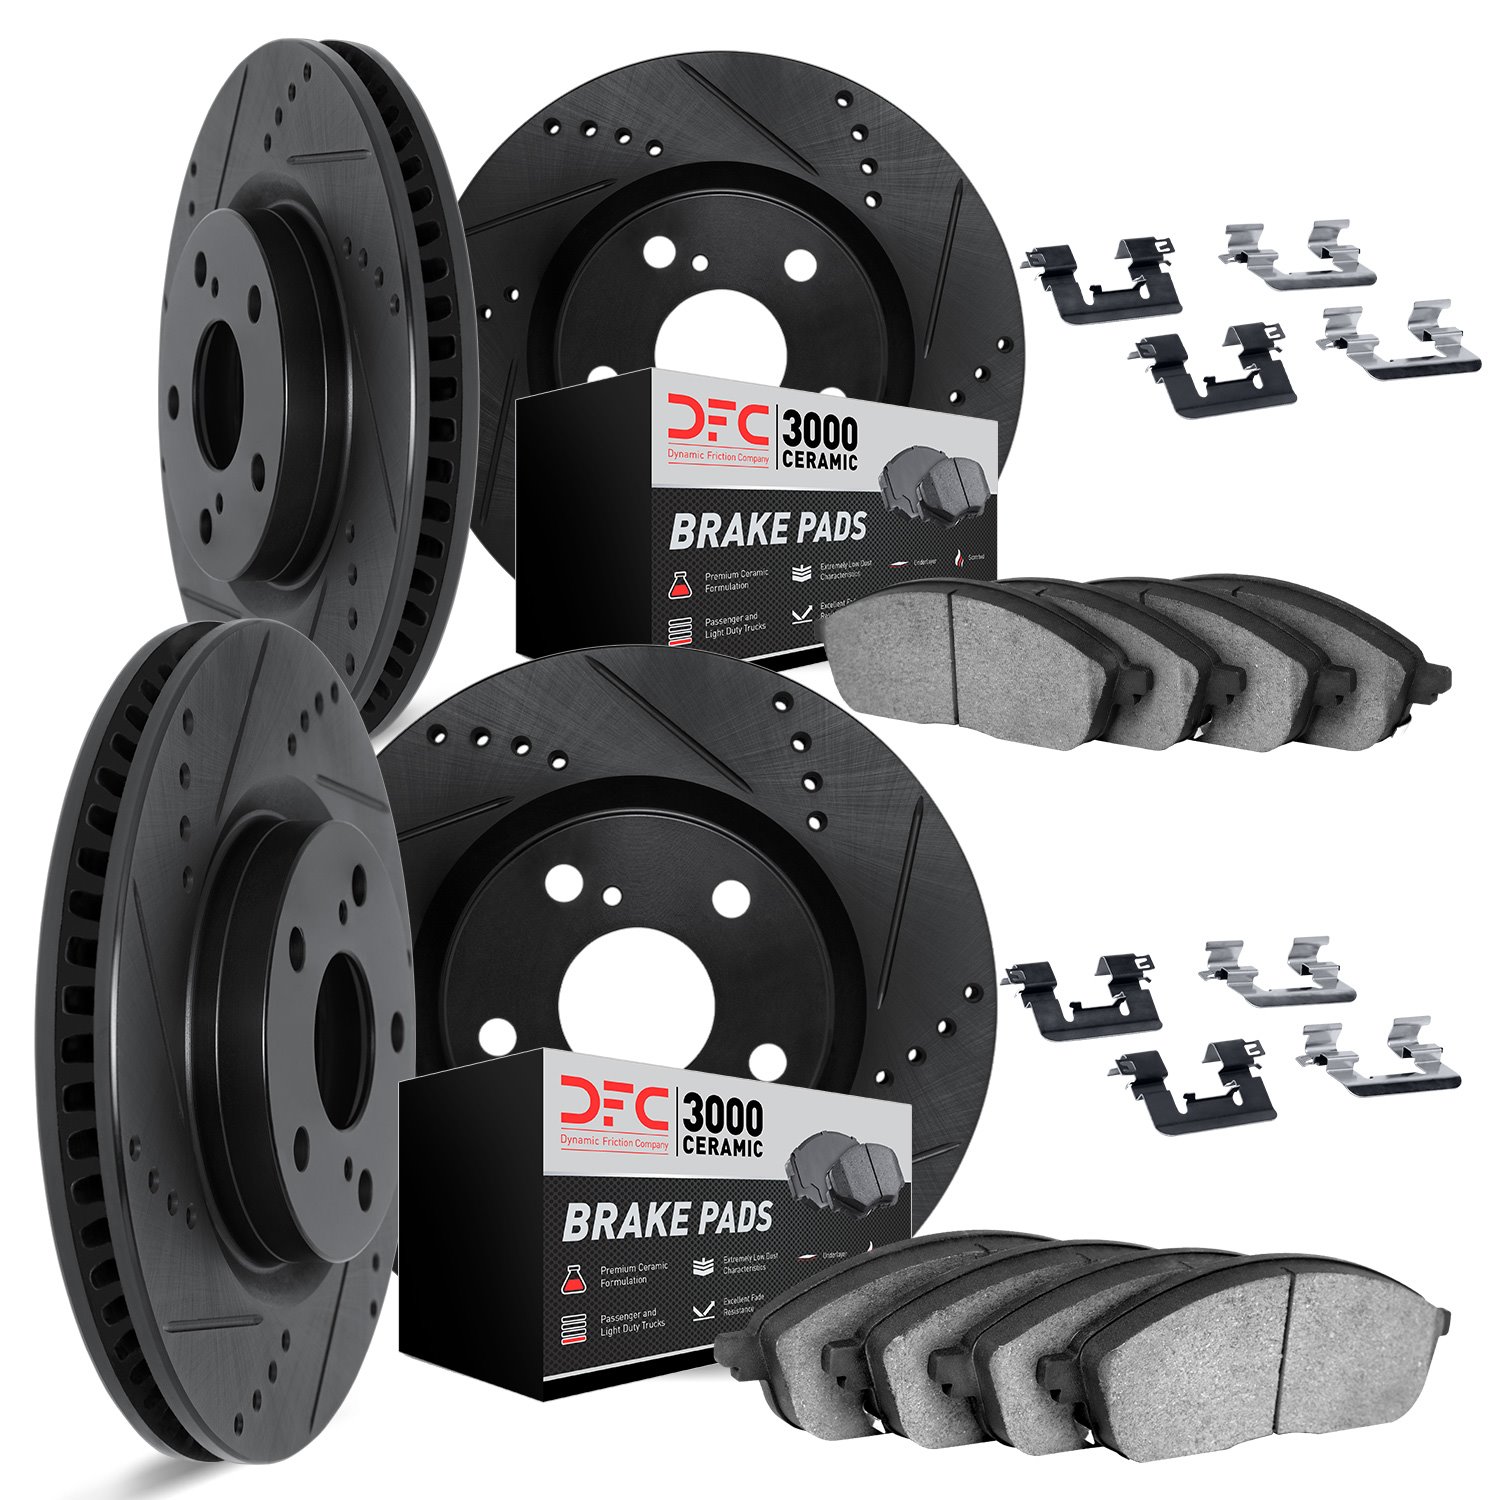 8314-75020 Drilled/Slotted Brake Rotors with 3000-Series Ceramic Brake Pads Kit & Hardware [Black], 2013-2020 Lexus/Toyota/Scion